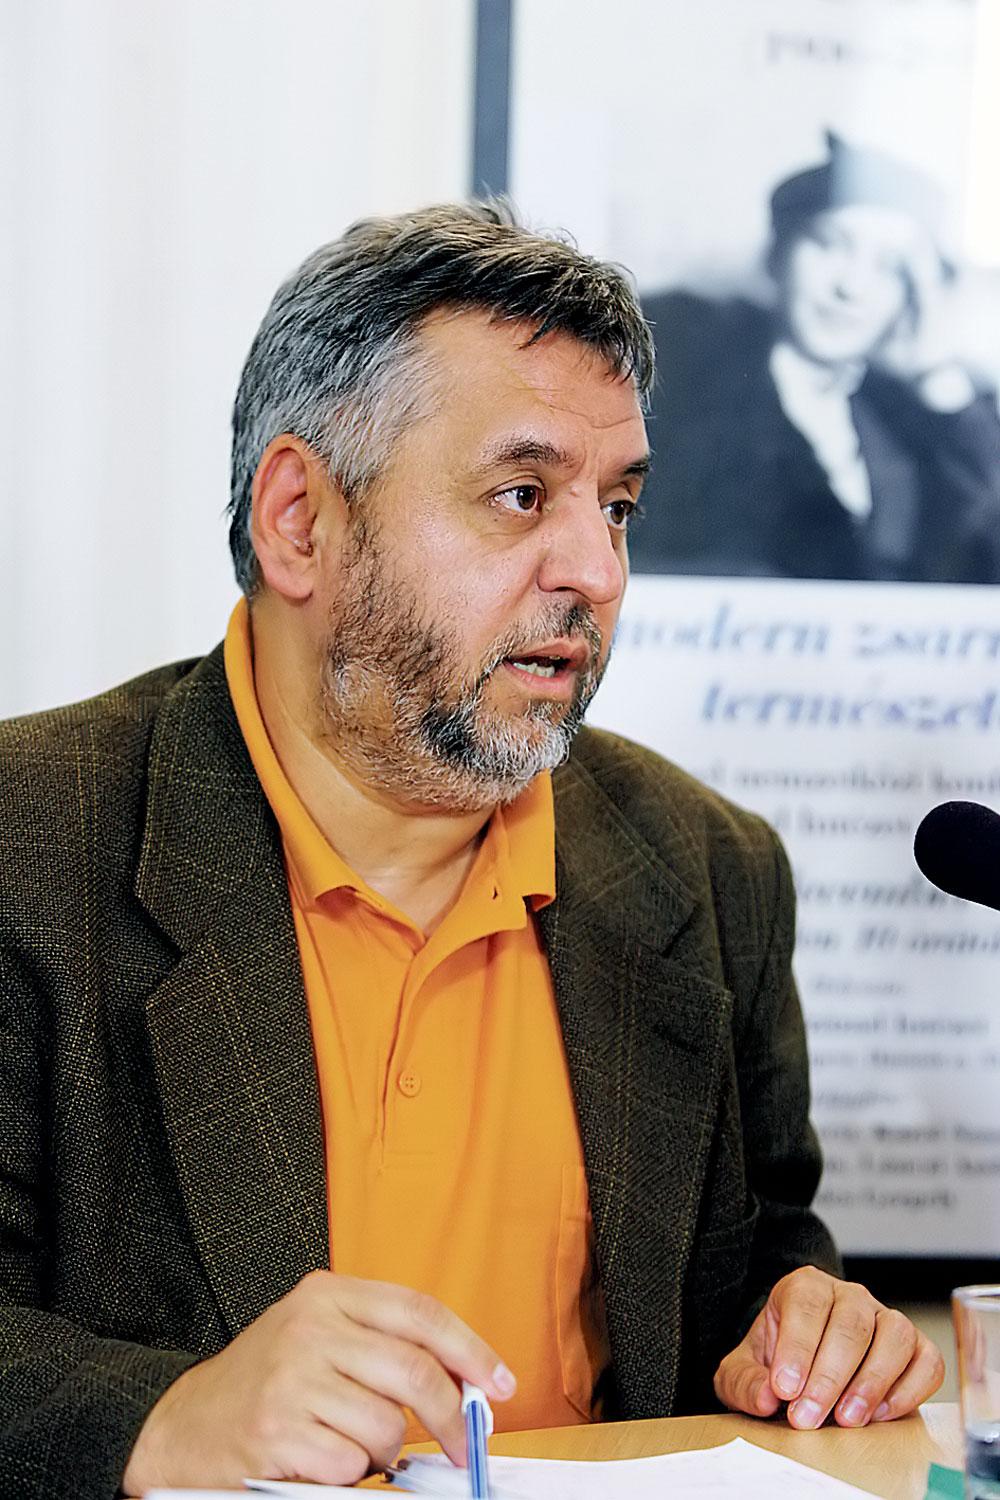 Lánczi András konzervatív fi lozófus, a Budapesti Corvinus Egyetem Politikatudományi Intézetének a vezetője, a Századvég Alapítvány elnöke